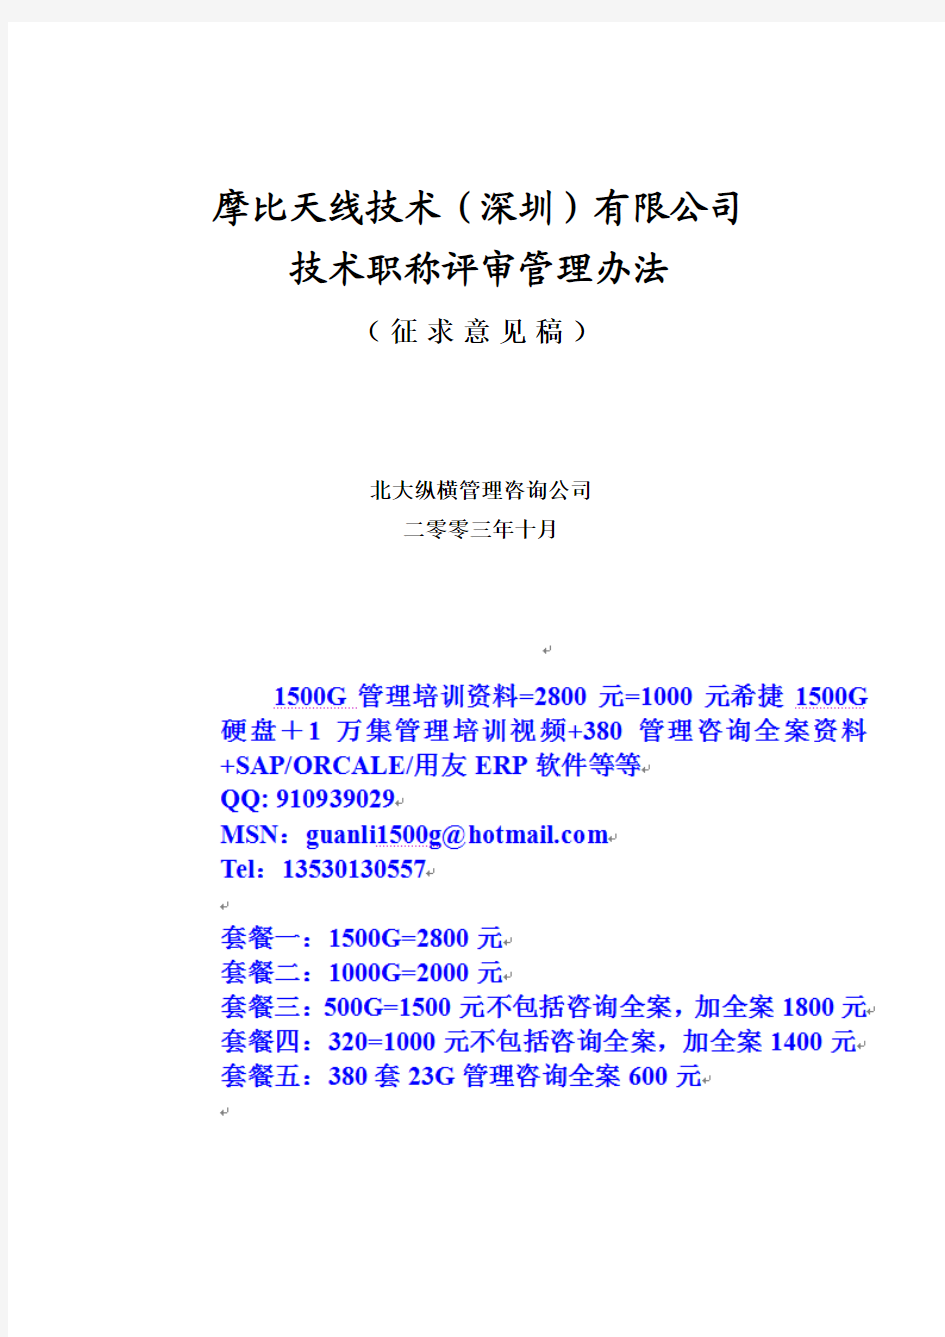 摩比天线技术(深圳)有限公司职称评审管理办法-1027